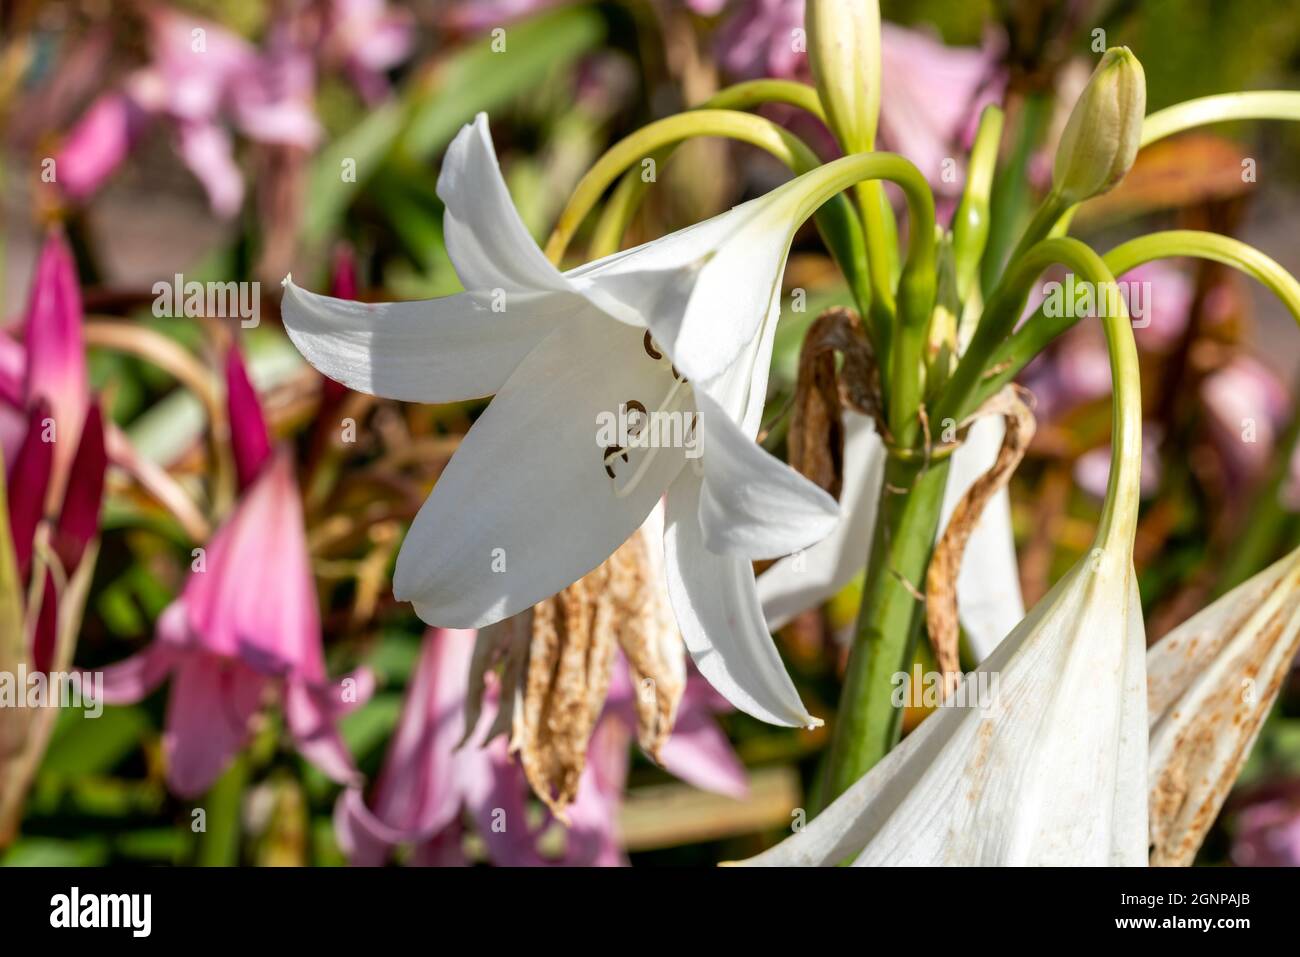 Crinum x Powellii alba un autunno estate autunno che fioriscono pianta bulbosa con una tromba bianca come il fiore estivo comunemente noto come giglio palude, pH di scorta Foto Stock